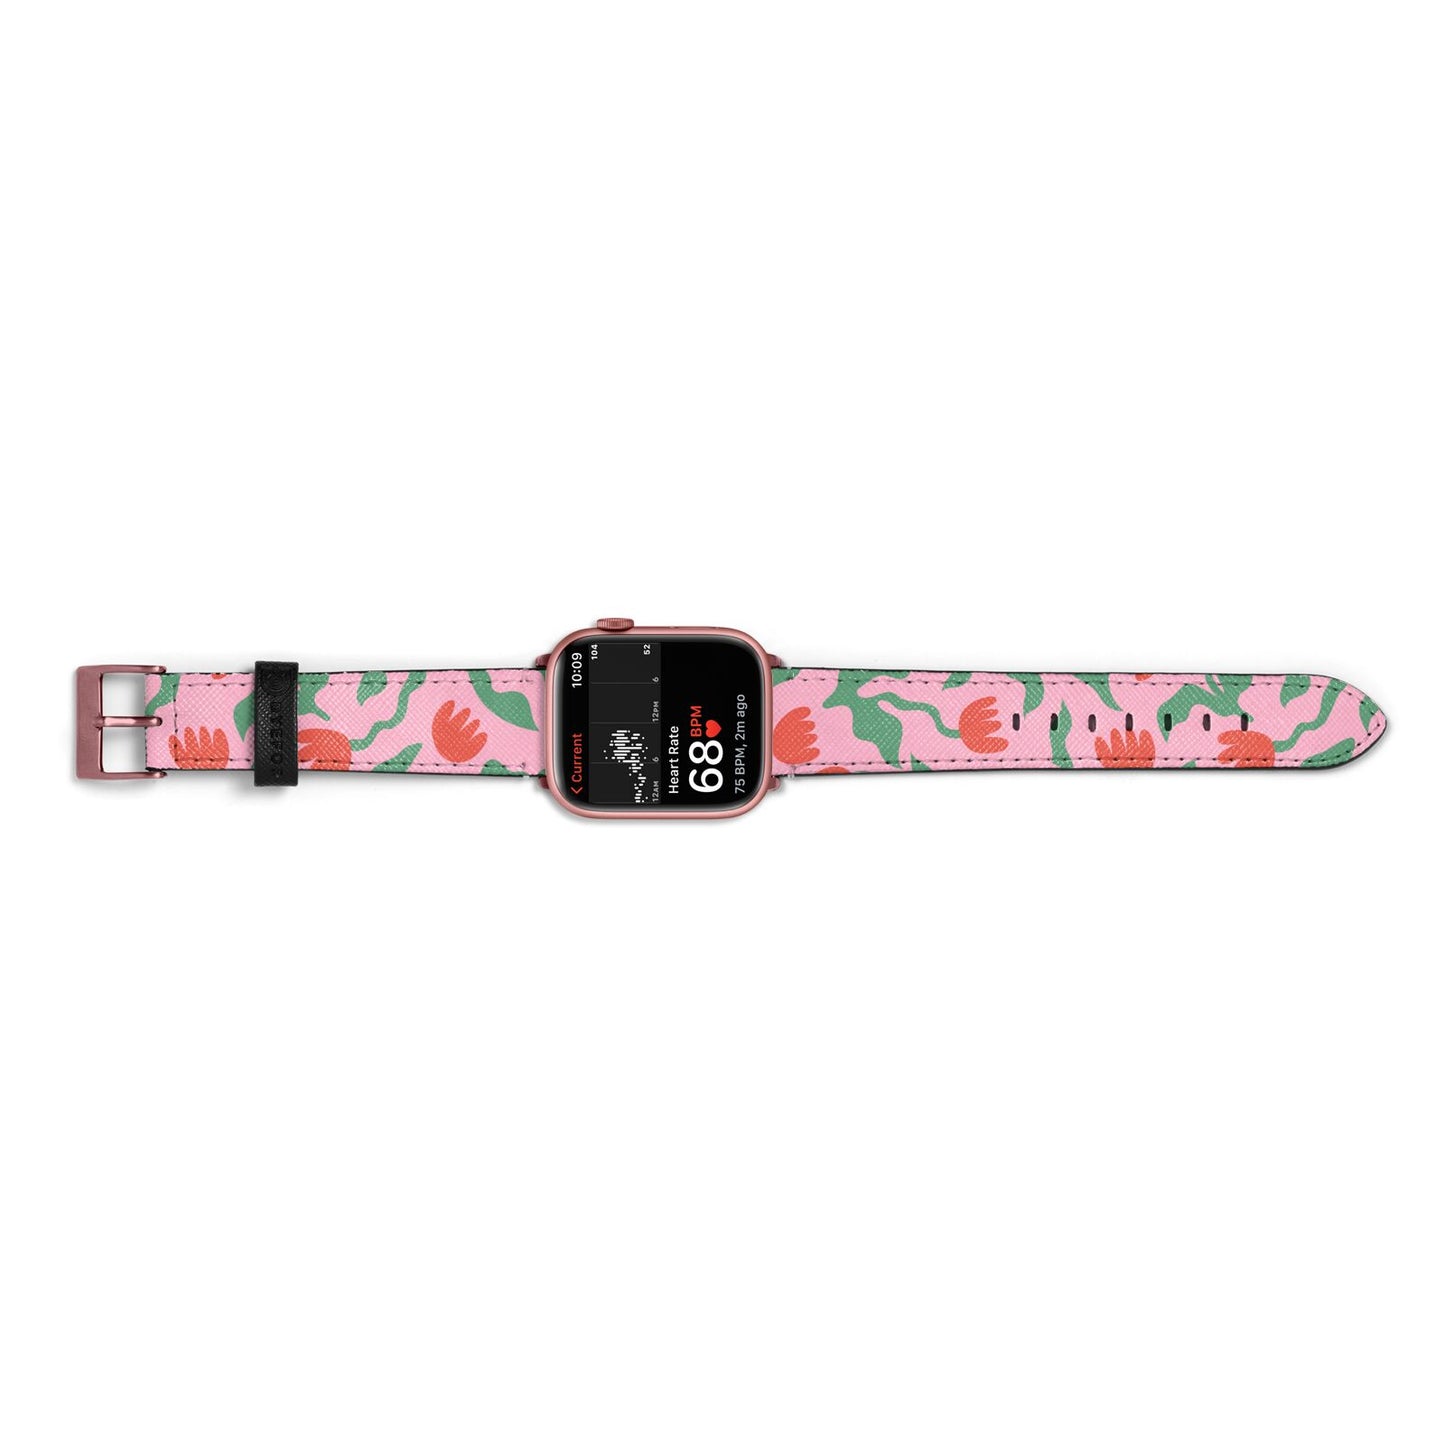 Simple Floral Apple Watch Strap Size 38mm Landscape Image Rose Gold Hardware